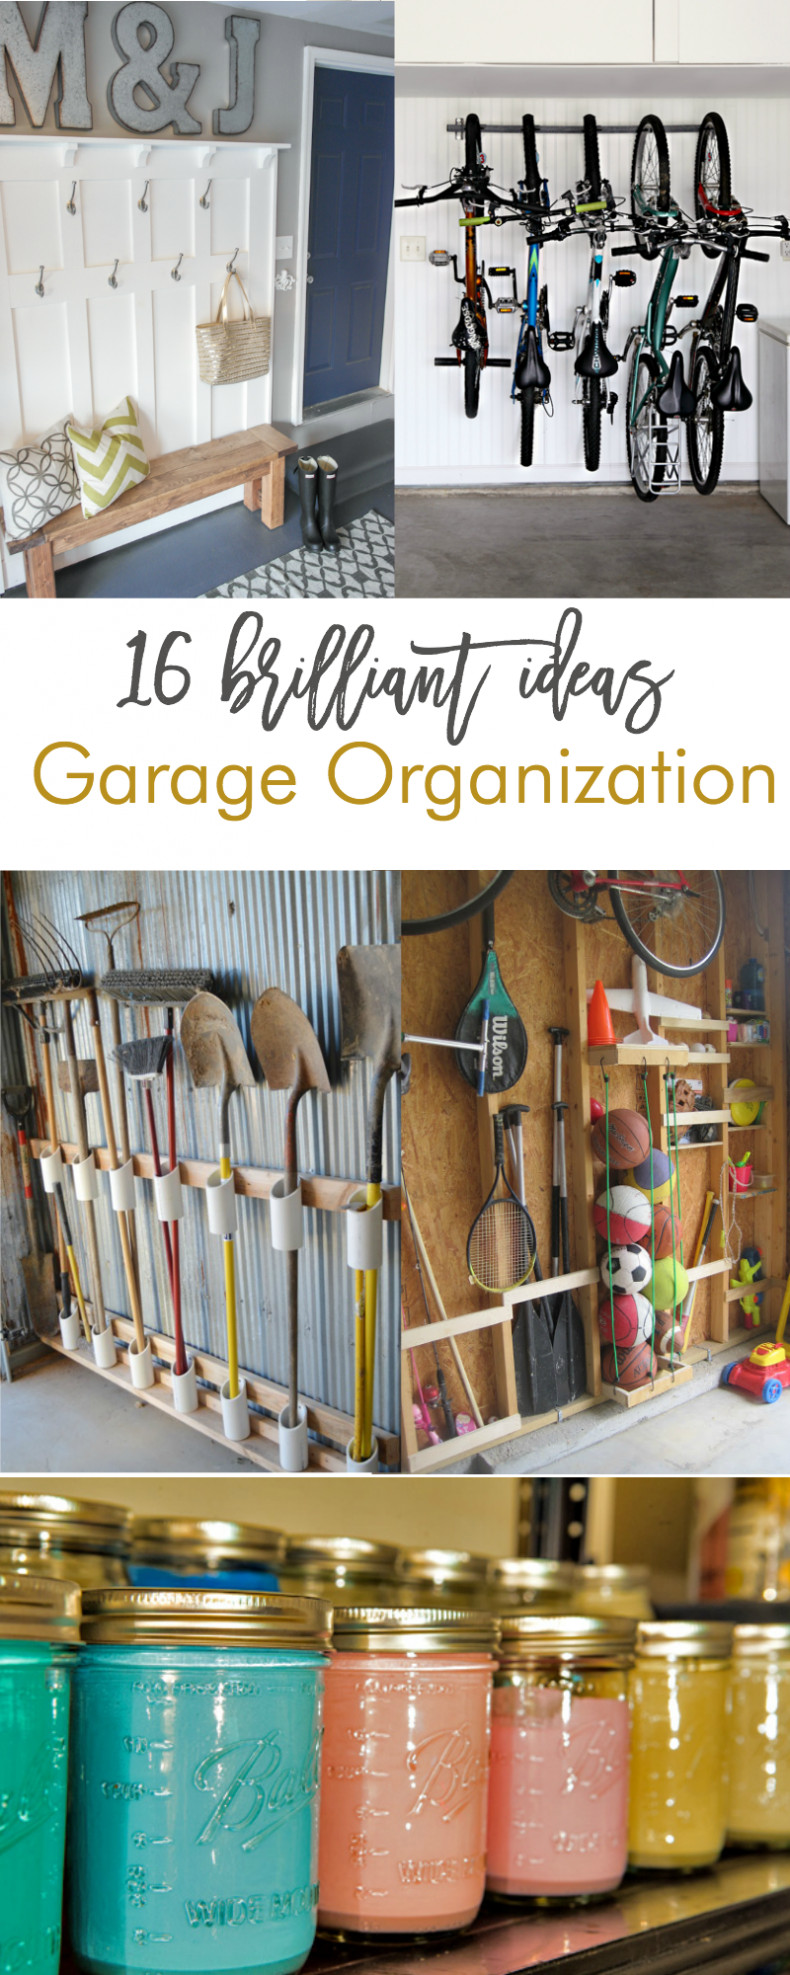 Best ideas about Garage Storage Ideas DIY
. Save or Pin 16 Brilliant DIY Garage Organization Ideas Now.